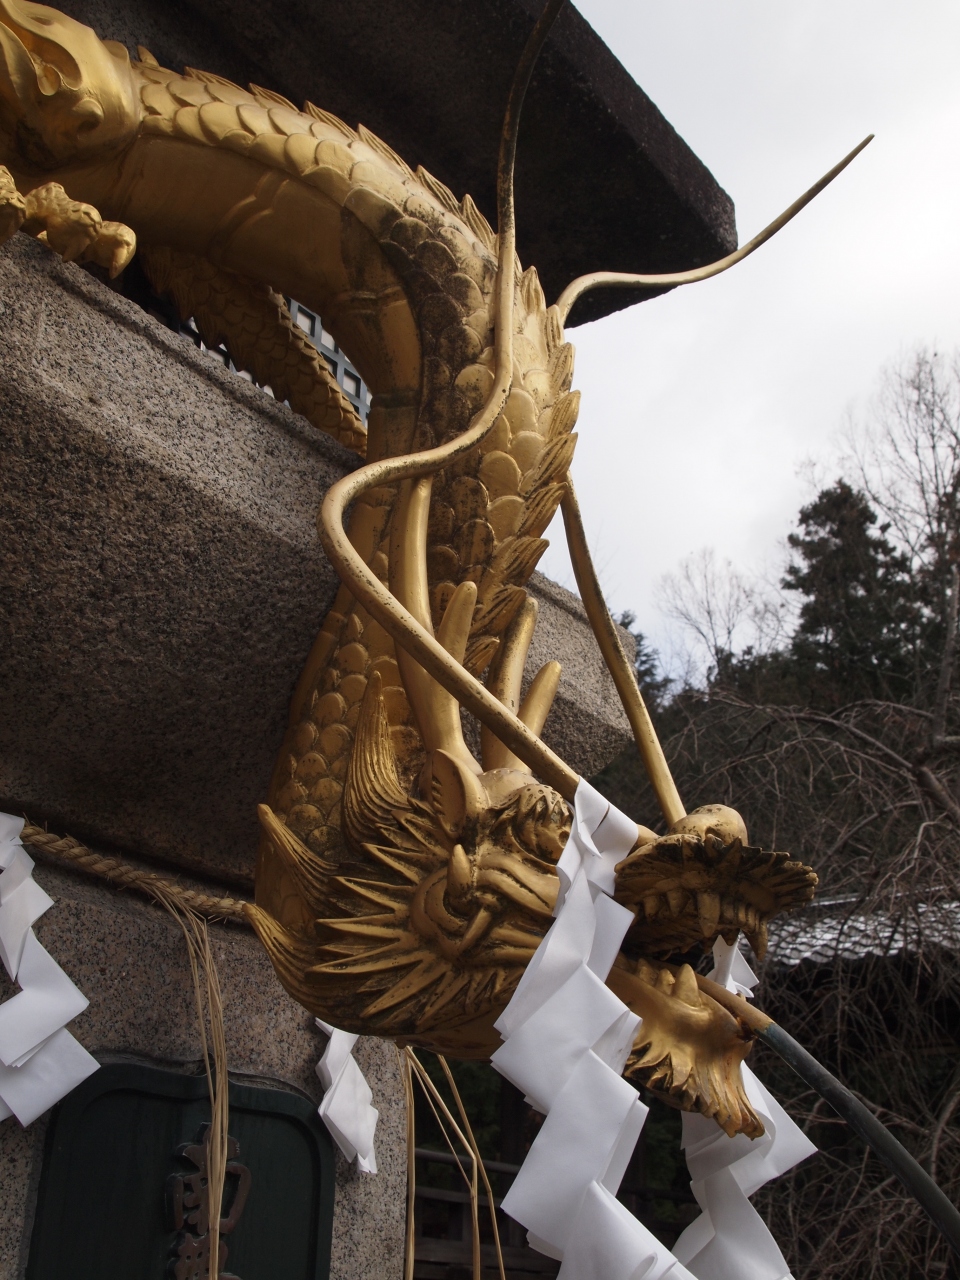 黄金の龍をもとめて 京都 山科へ 山科 京都 の旅行記 ブログ By のーとくんさん フォートラベル